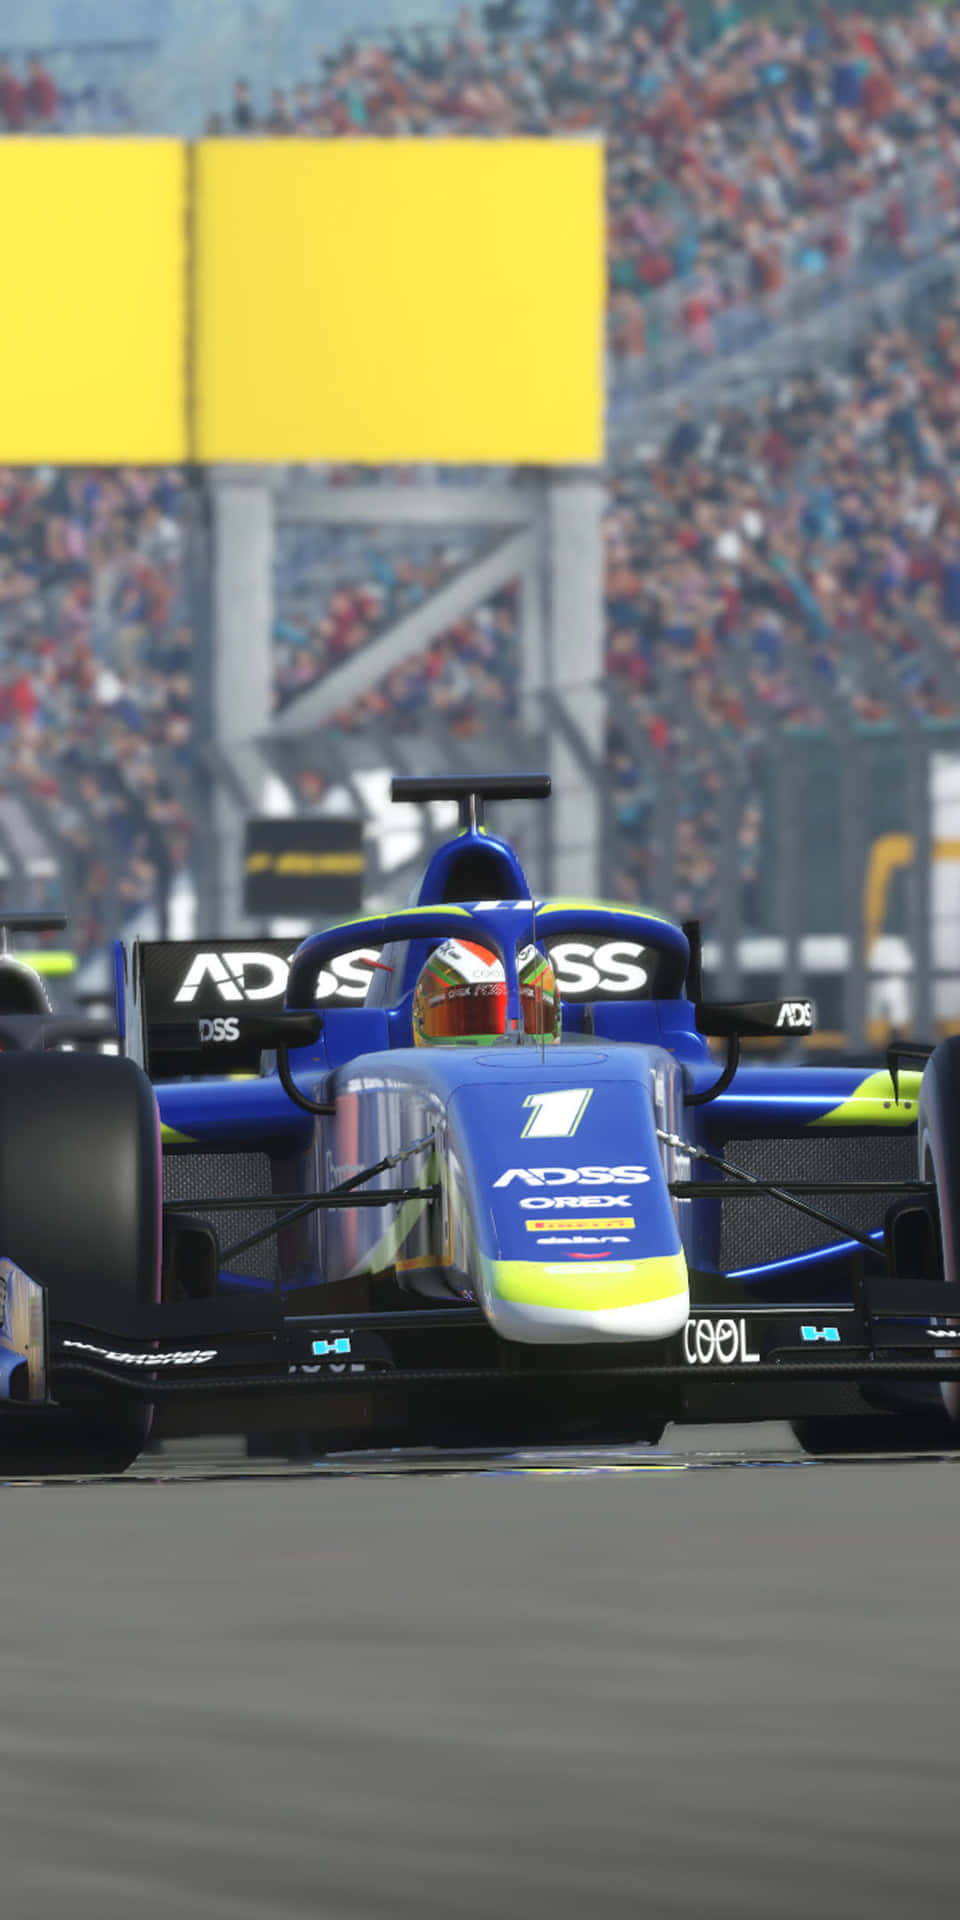 Erlebensie Die Welt Der Formel 1 Mit Dem Leistungsstarken Pixel 3